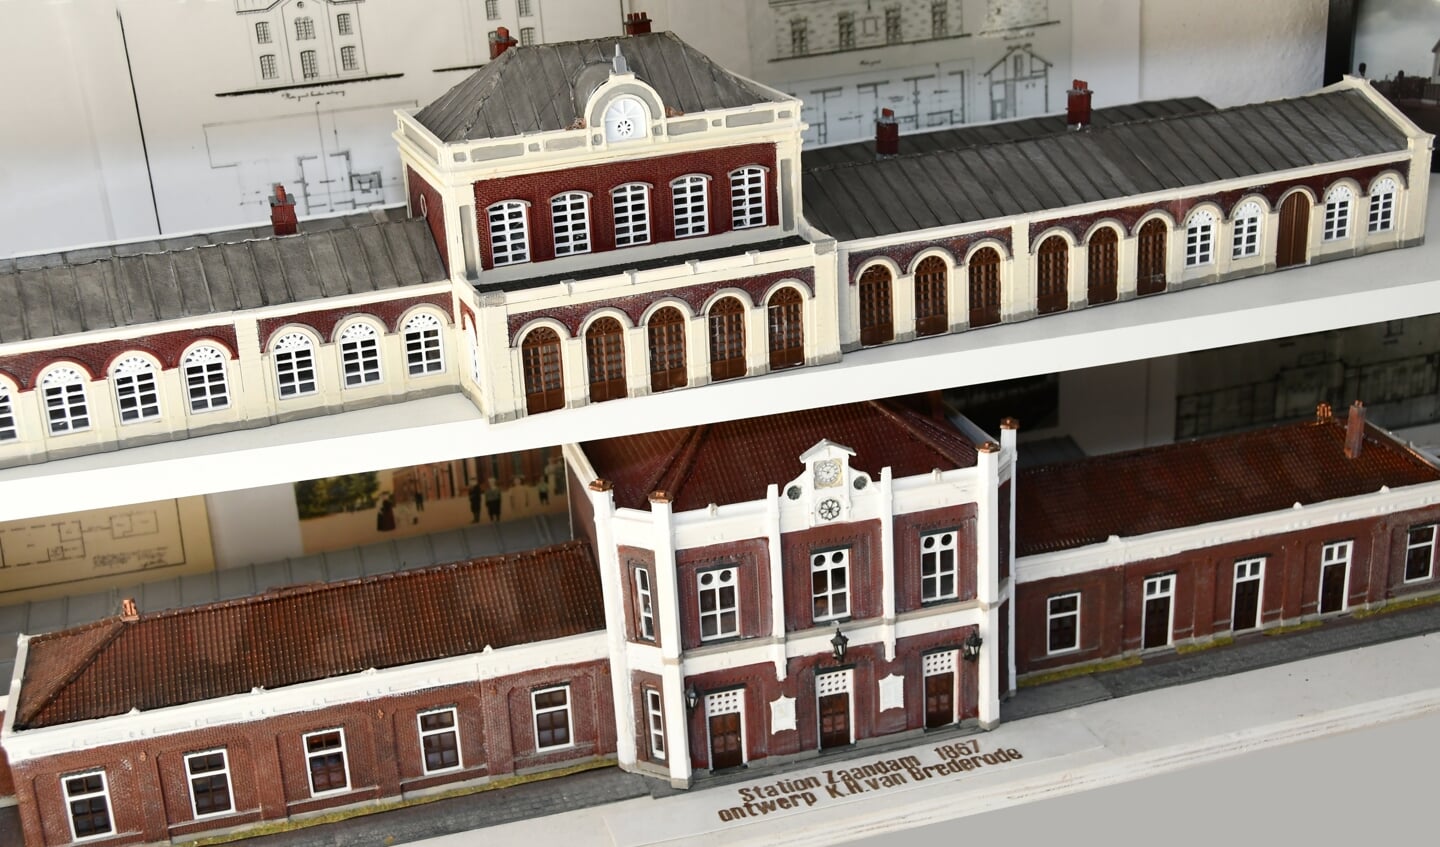 Station Zaandam uit 1920 (onder) geprint in 3D.